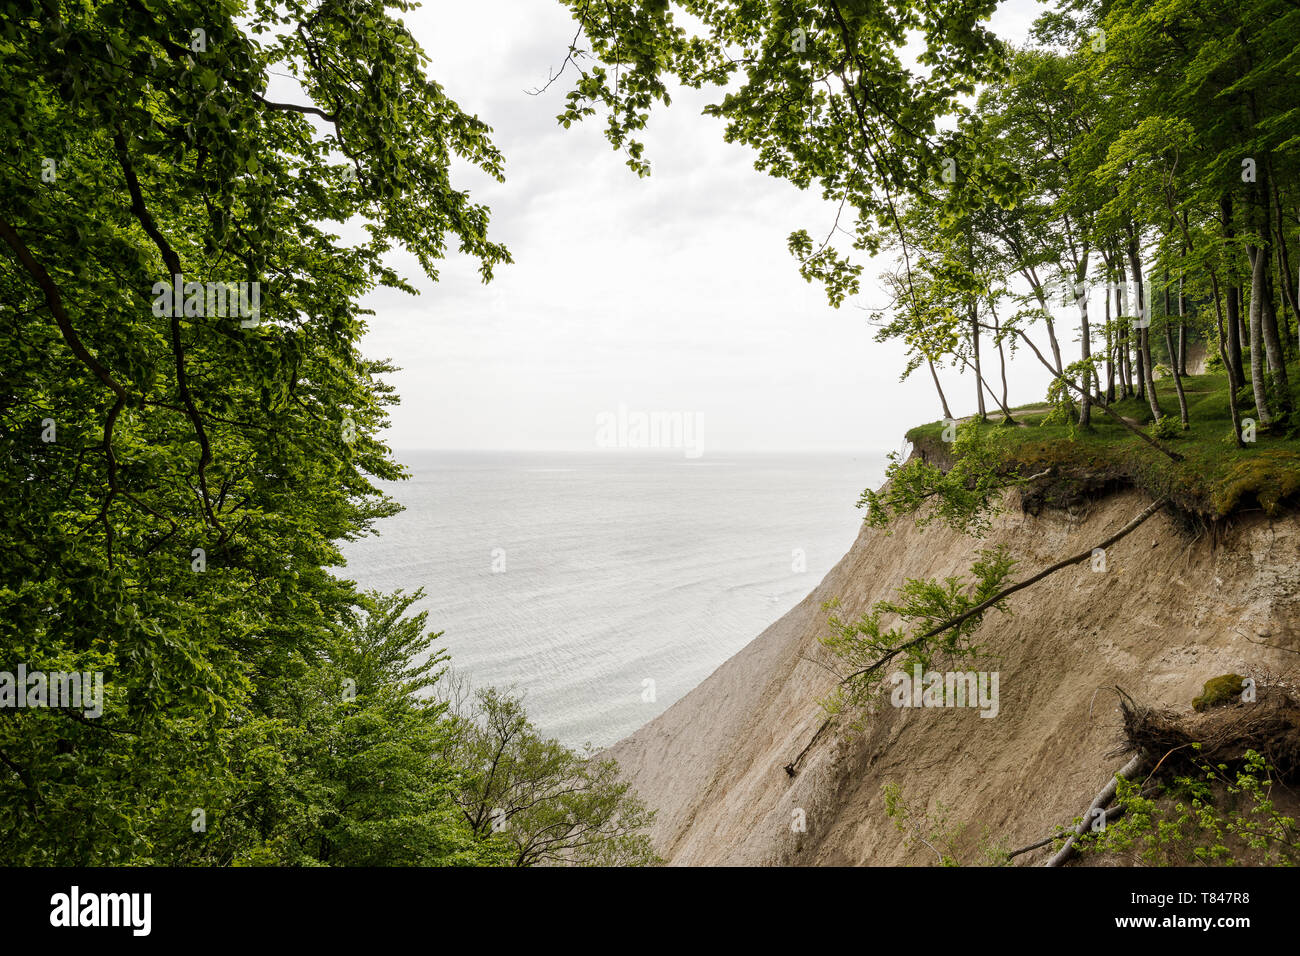 Paesaggio con alberi sul bordo della costiera chalk cliffs, Jasmund National Park, Sassnitz, Rügen, Meclenburgo-Pomerania Occidentale, Germania Foto Stock